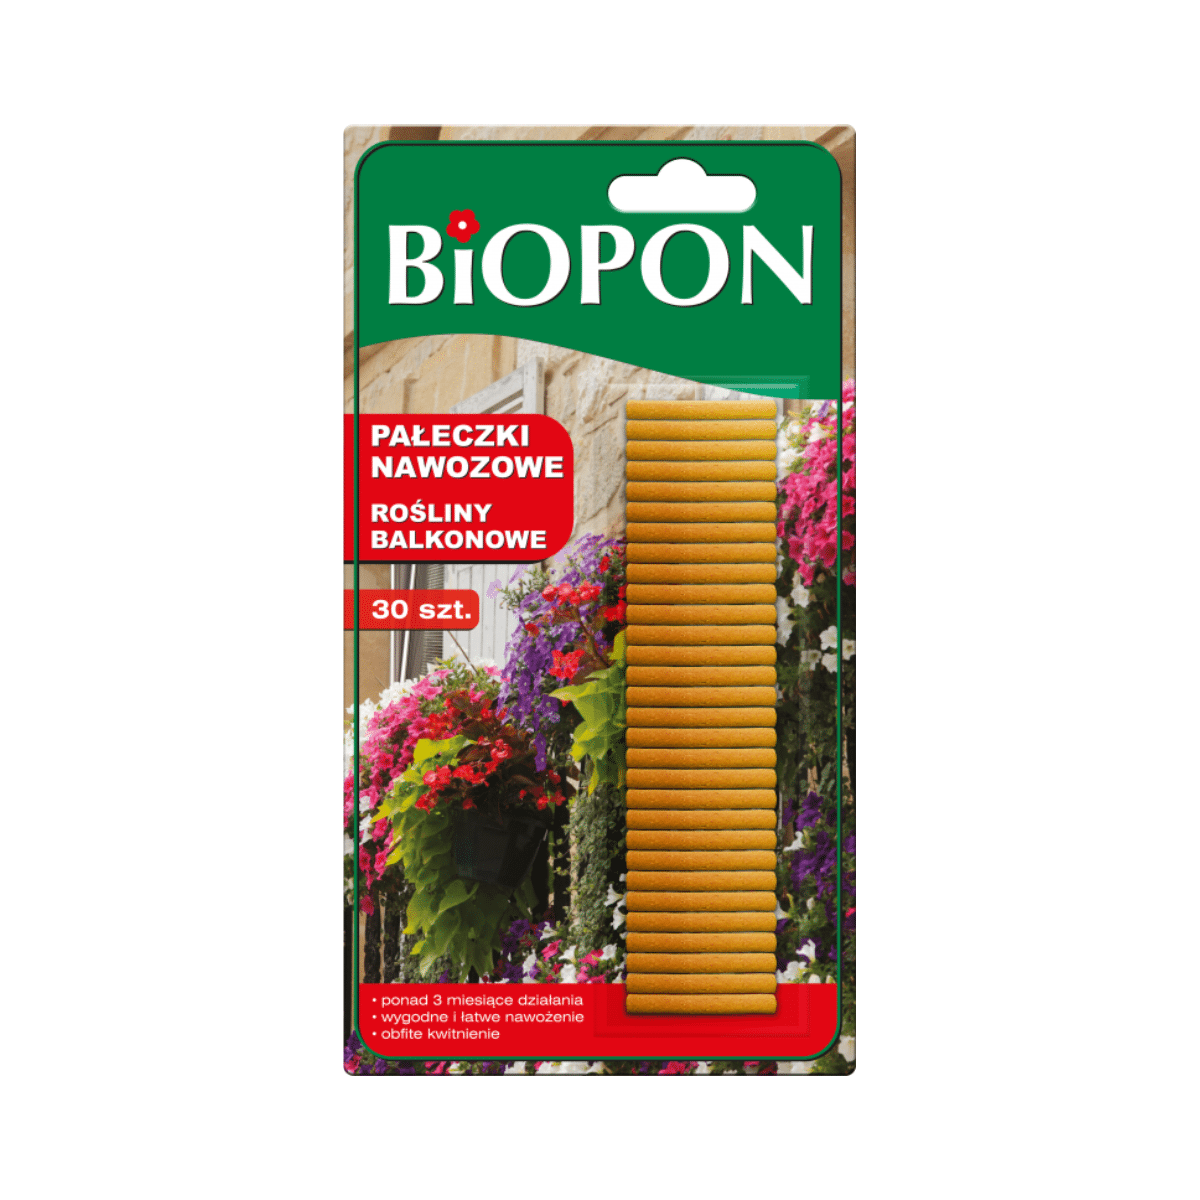 Pałeczki nawozowe do roślin balkonowych Biopon